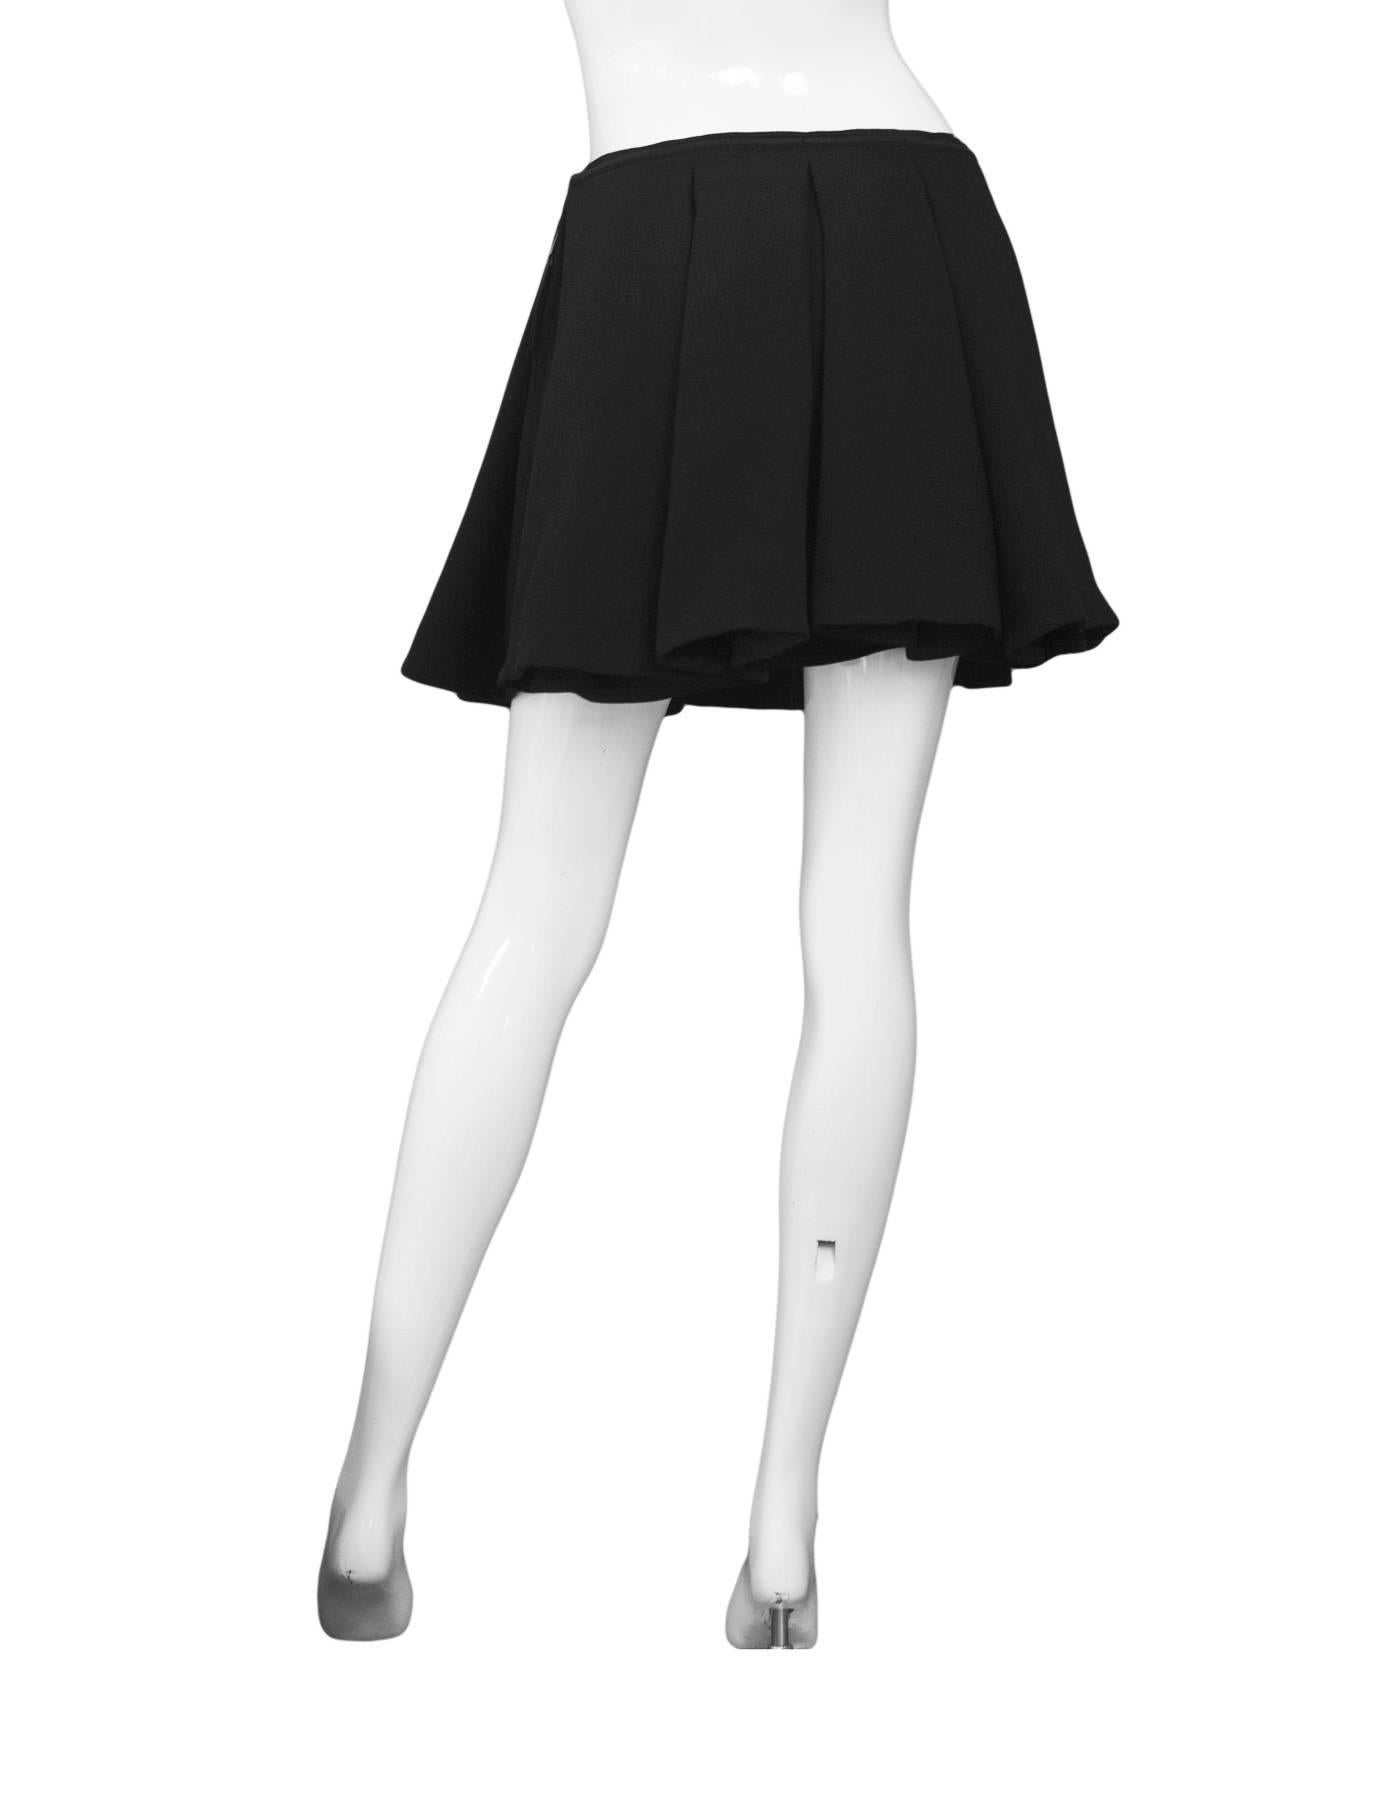 black pleated skater skirt